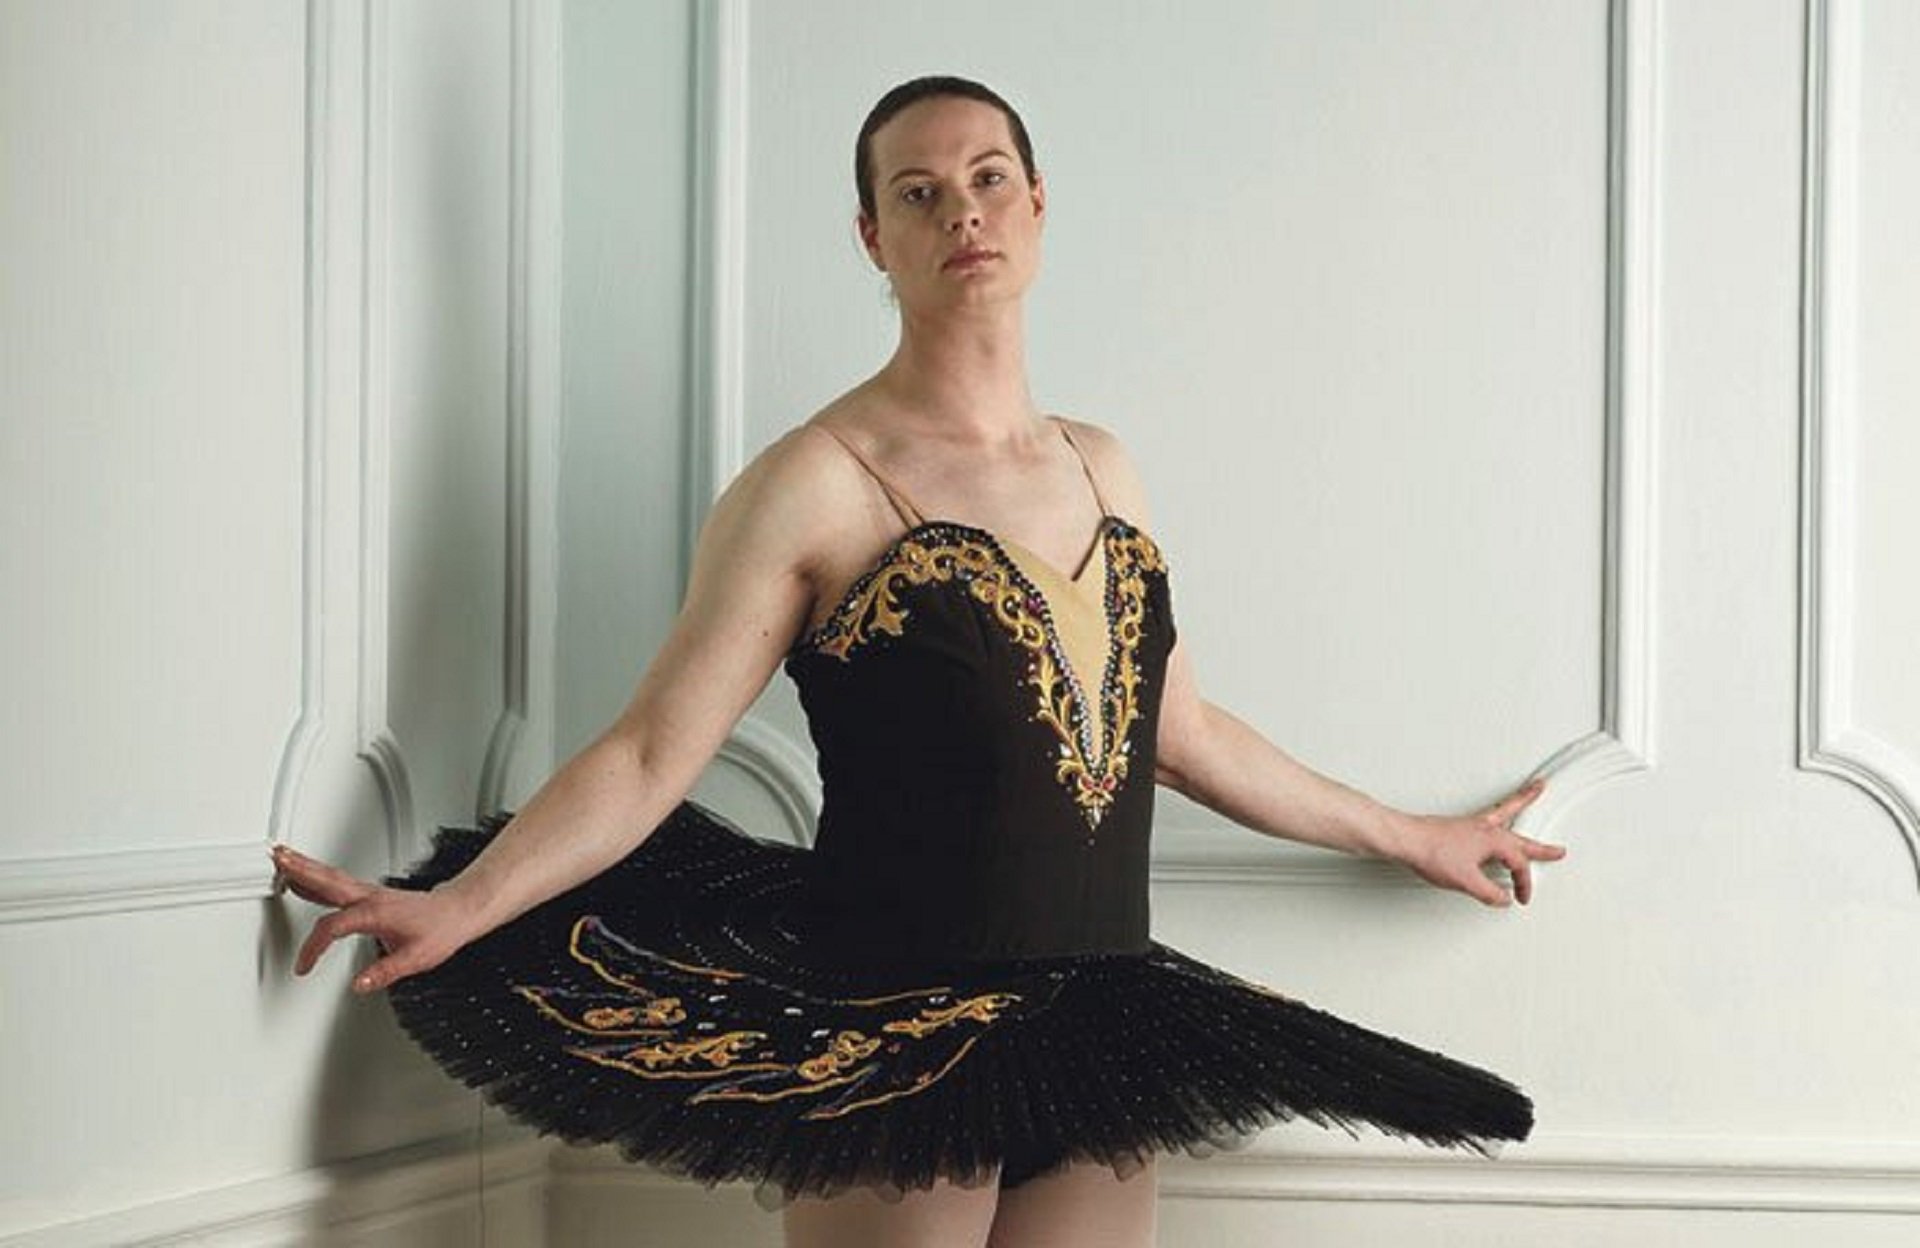 El Regne Unit s'indigna amb el vídeo d'una ballarina trans de la Royal Academy: "No sap ballar"